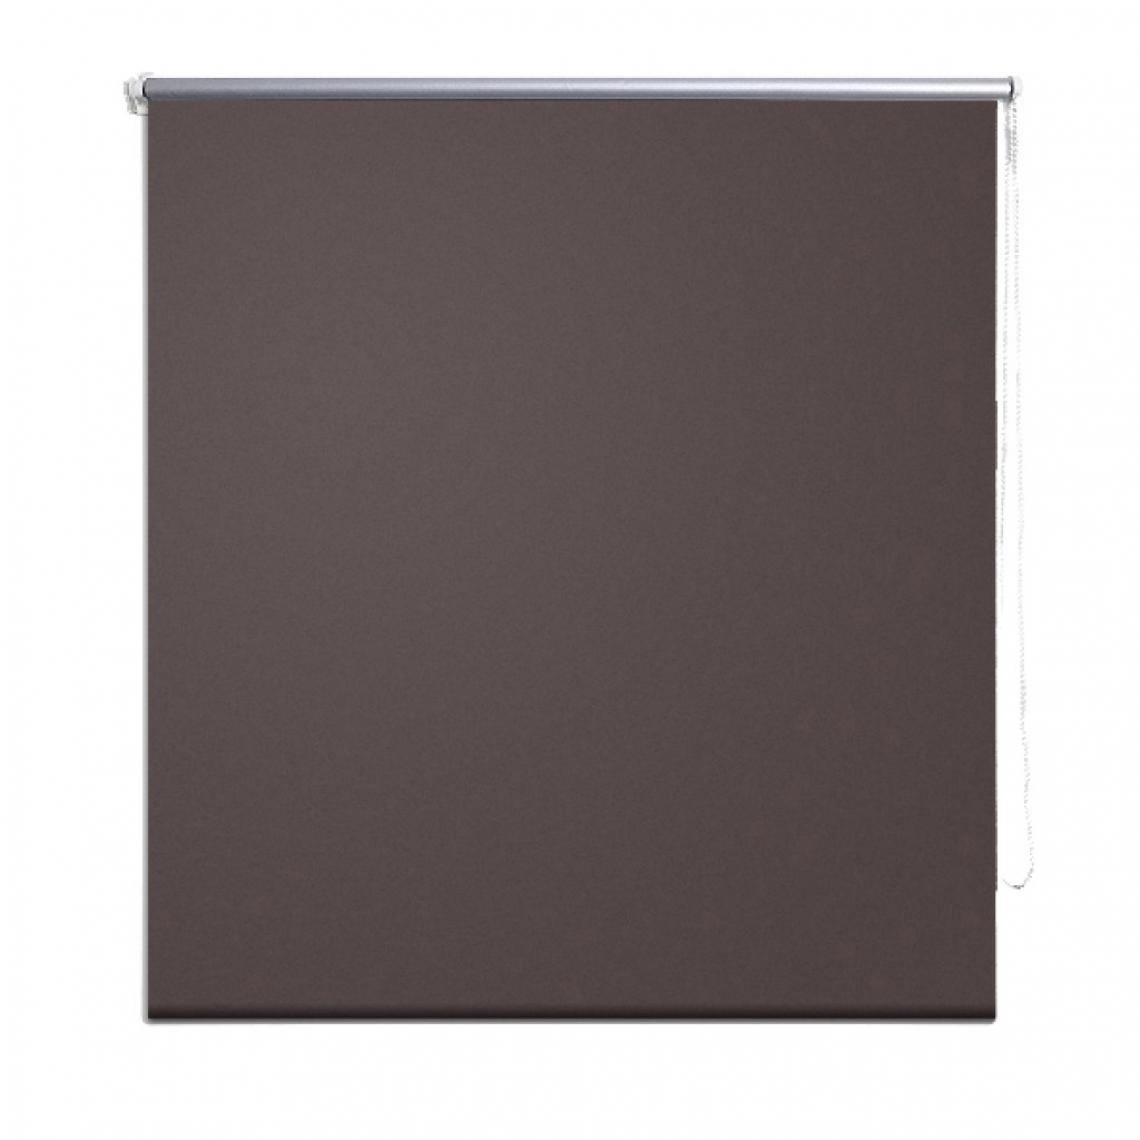 Helloshop26 - Store enrouleur marron occultant 120 x 230 cm fenêtre rideau pare-vue volet roulant 4102057 - Store compatible Velux